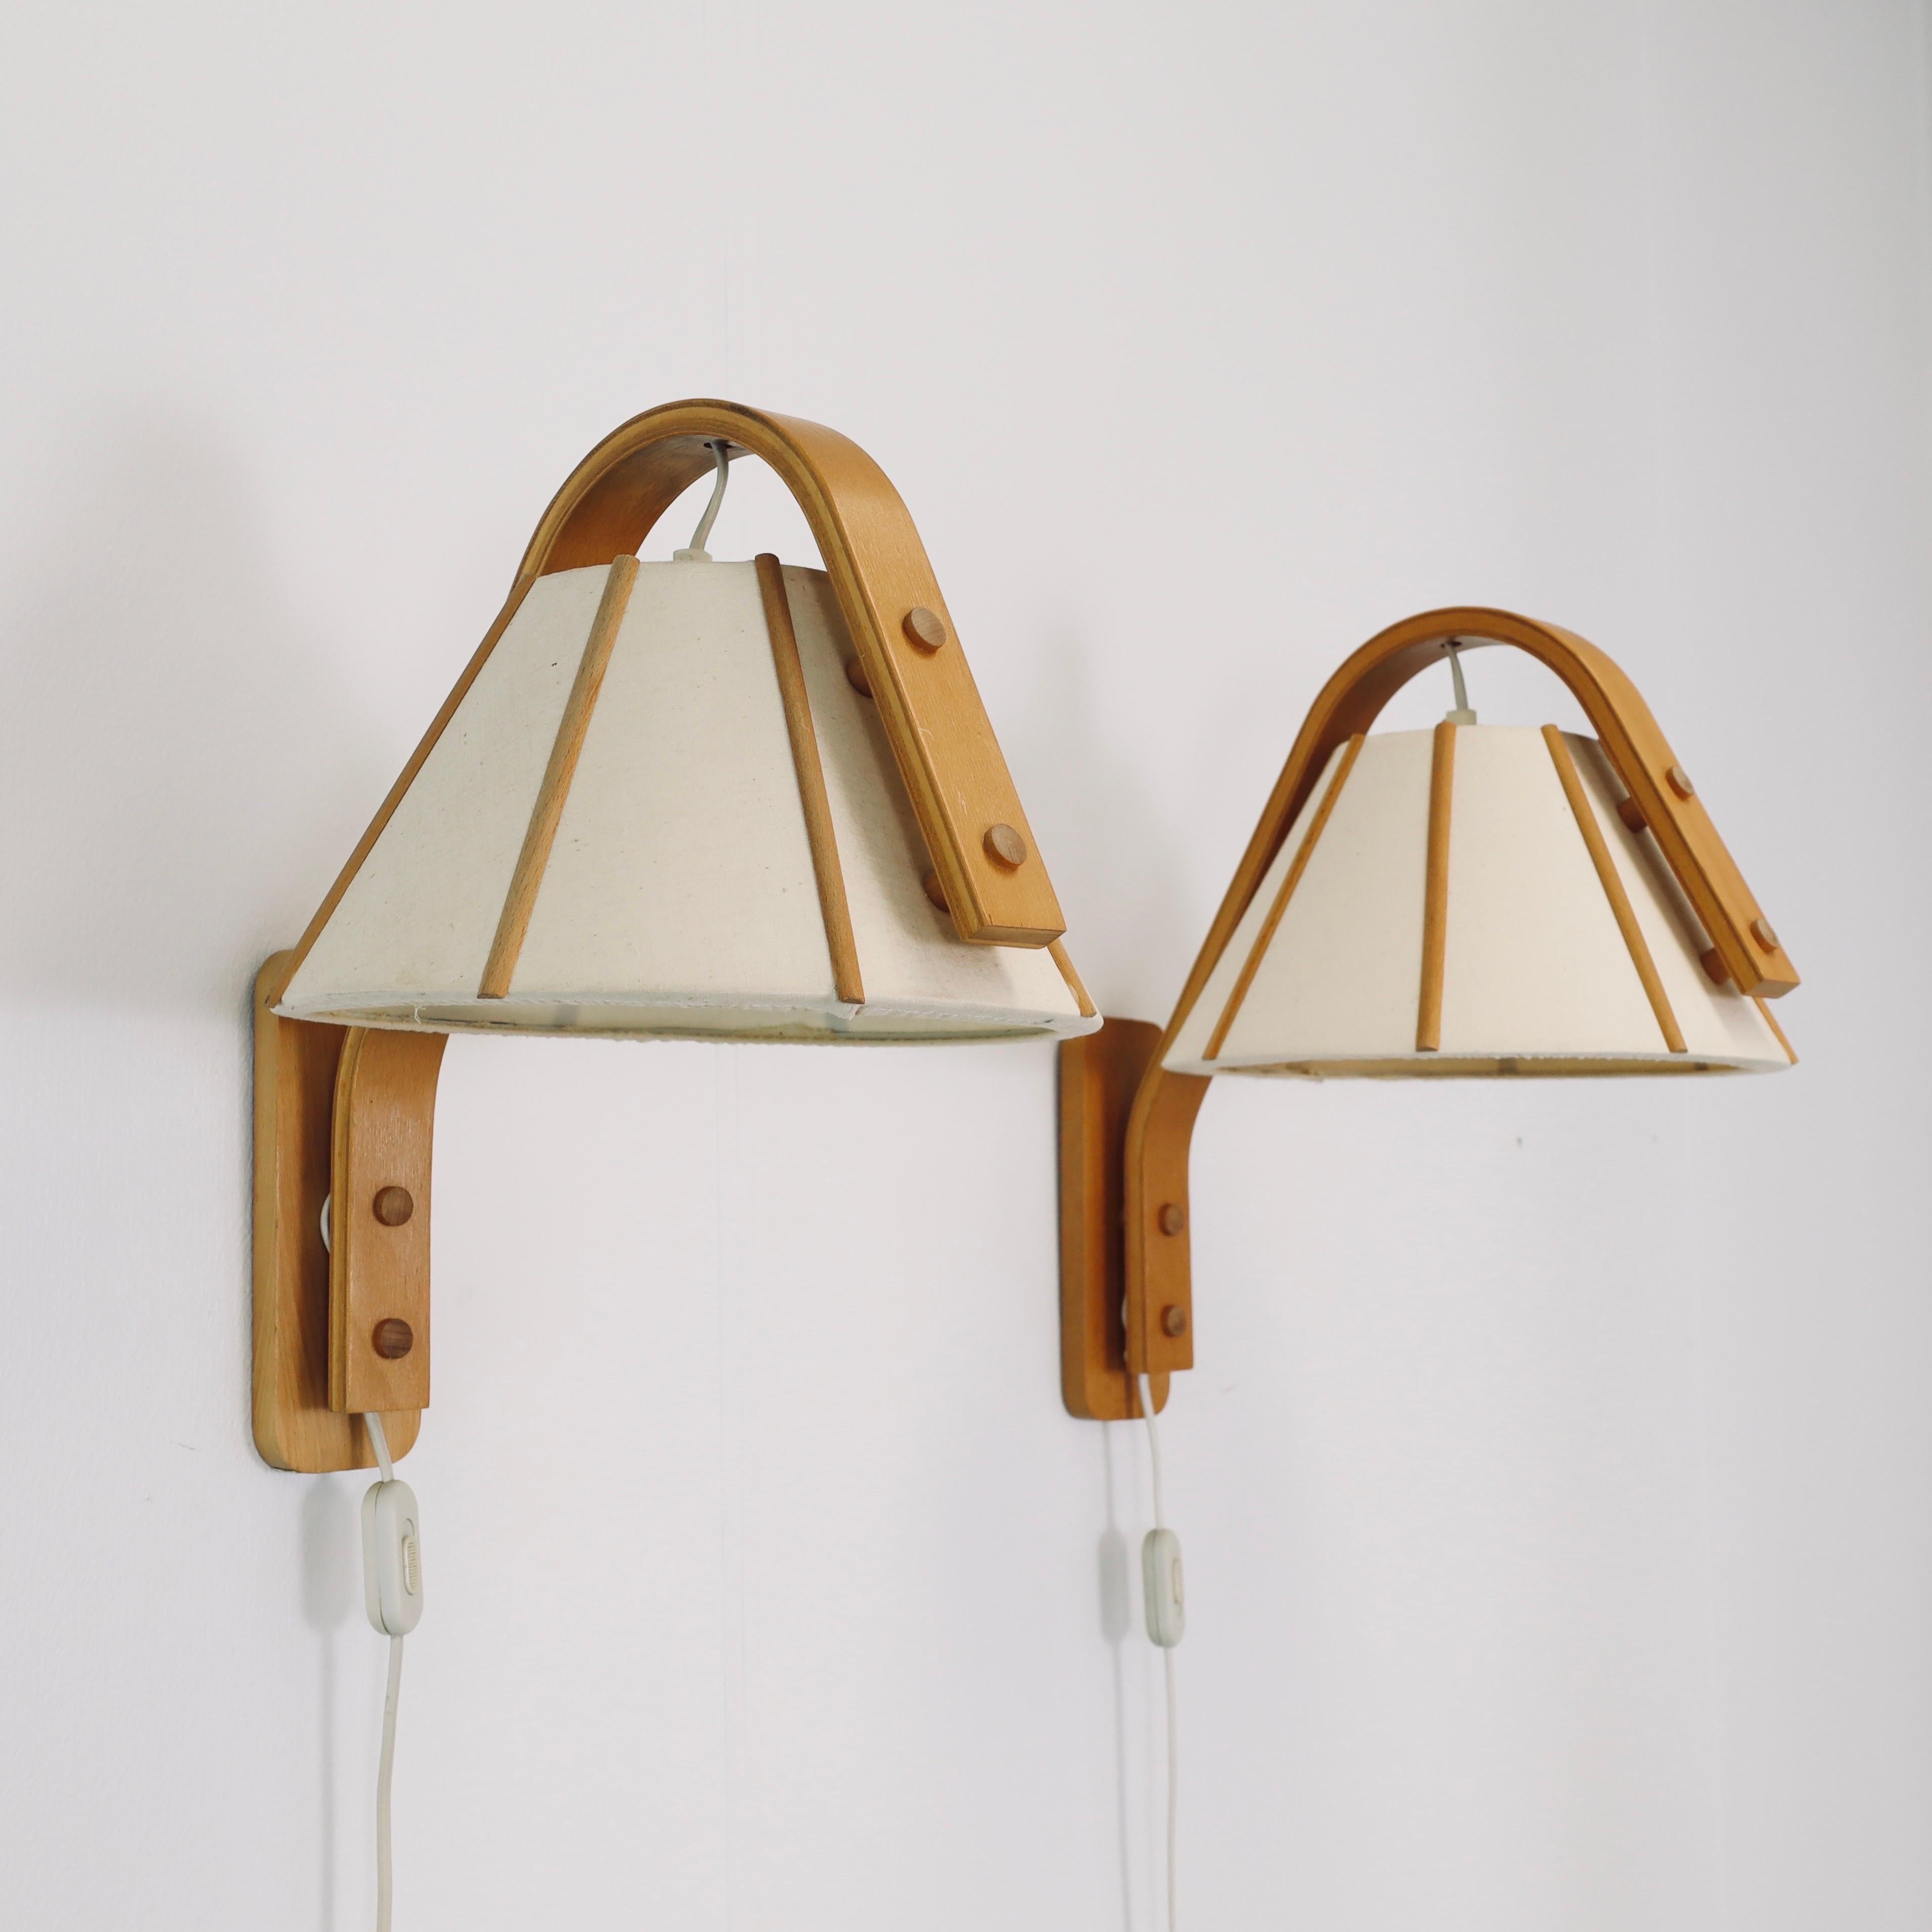 Fabric Scandinavian Modern Beech wood wall lamps by Jan Wickelgren, 1970s, Sweden 